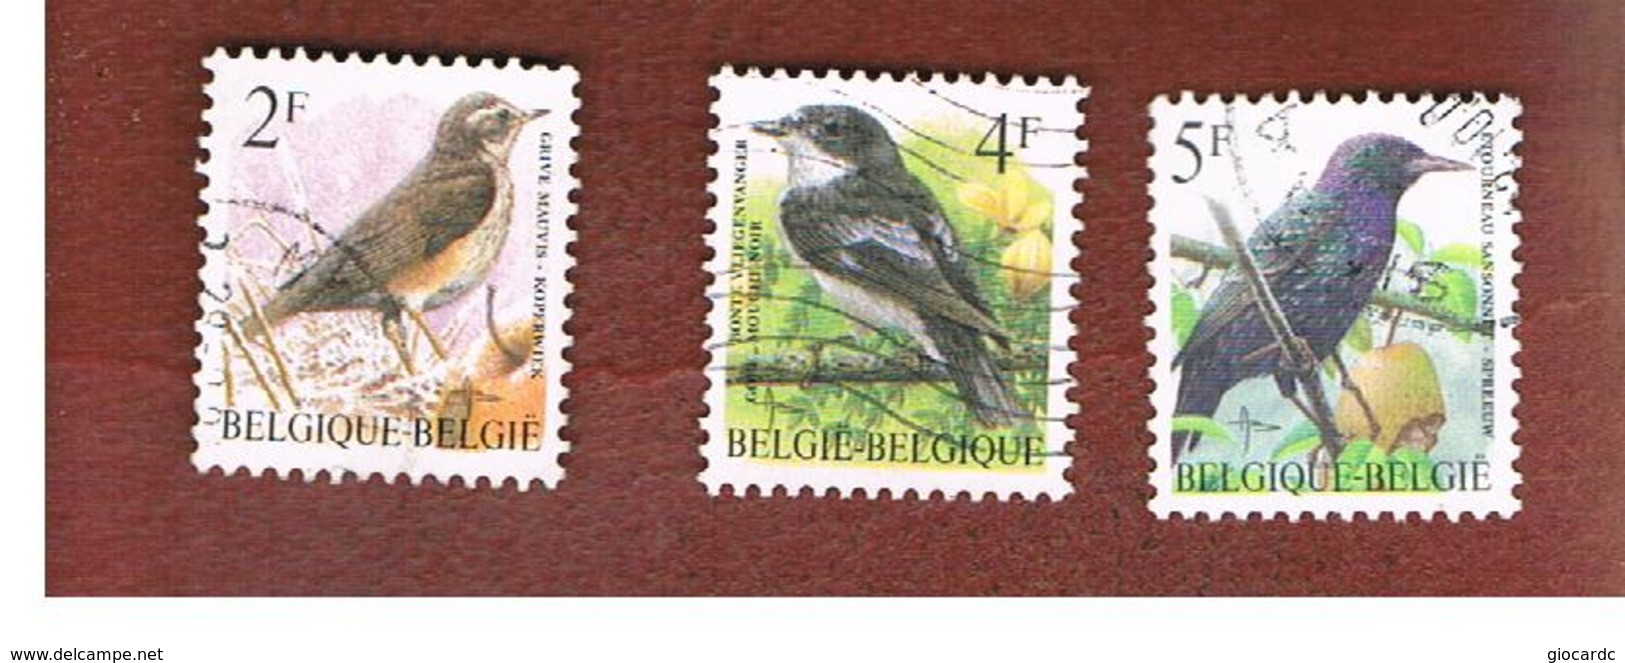 BELGIO (BELGIUM)   - SG 3304.3307  - 1996 BIRDS    - USED - Usati